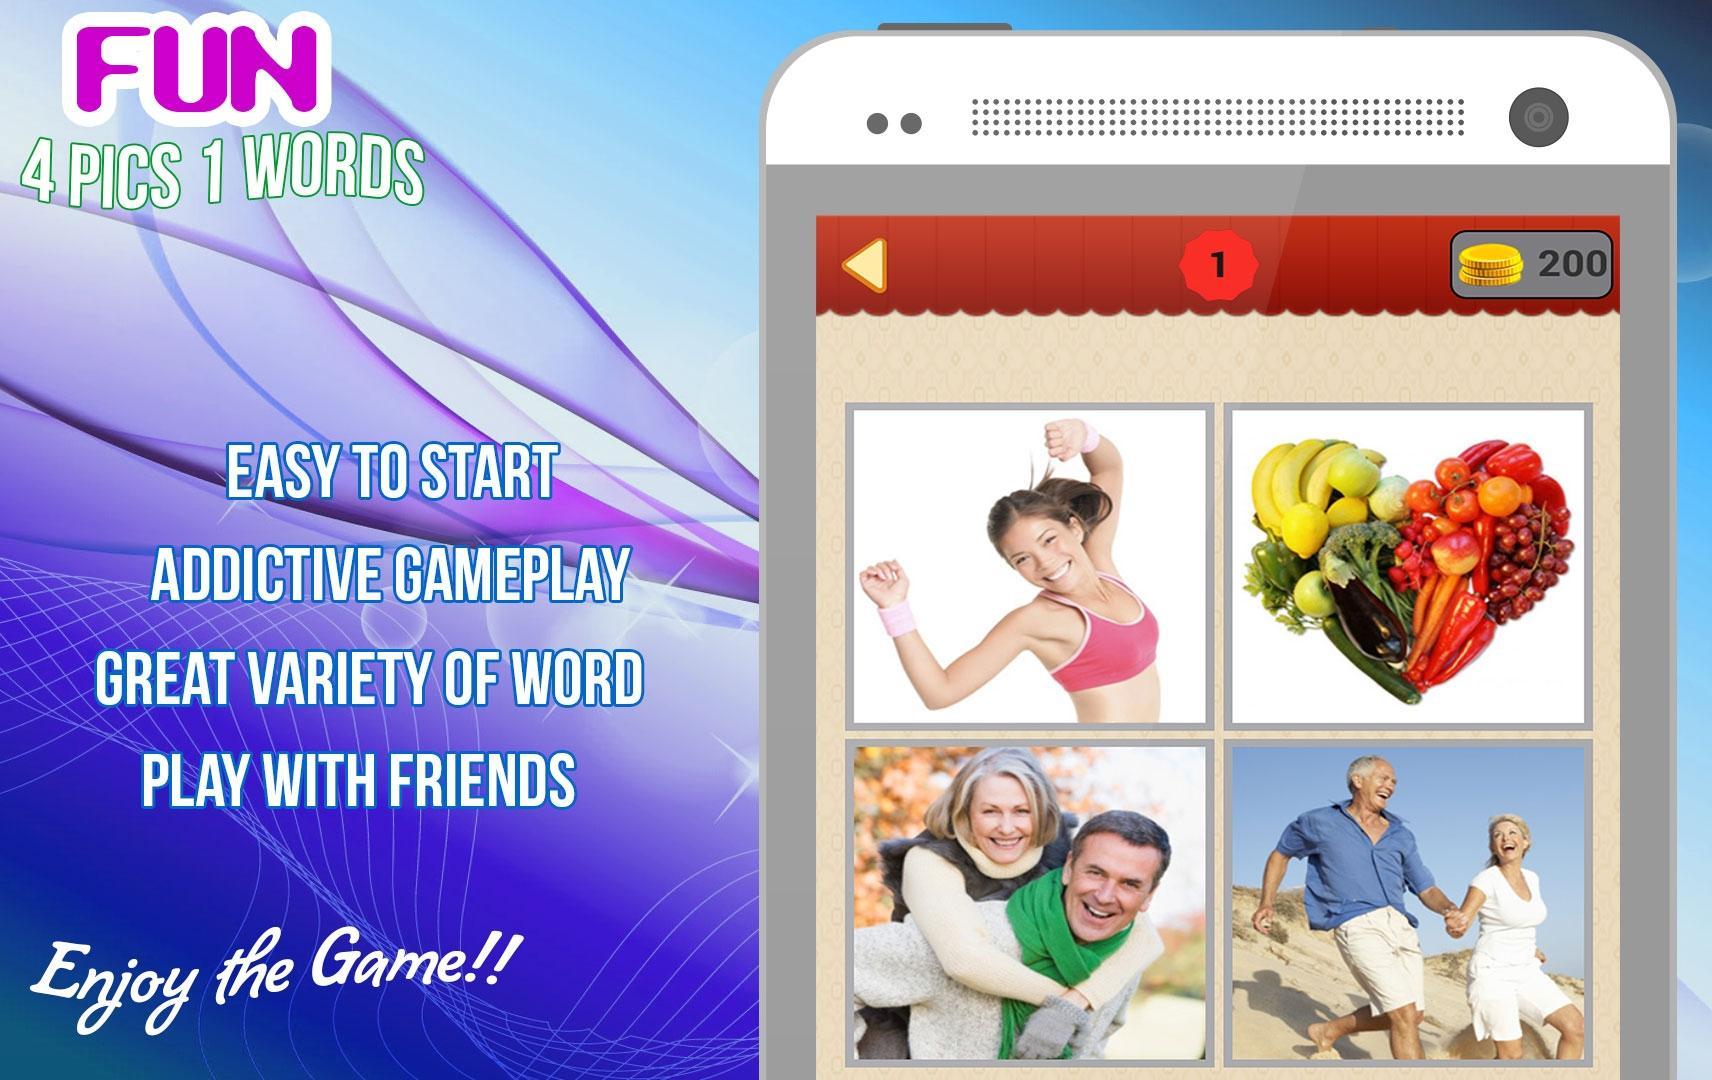 Центр первое слово. 4 Pics 1 Word. 4 Pics 1 Word Gameplay. 4pics 1 Word about Health pdf. 4pics 1 Word about Health.